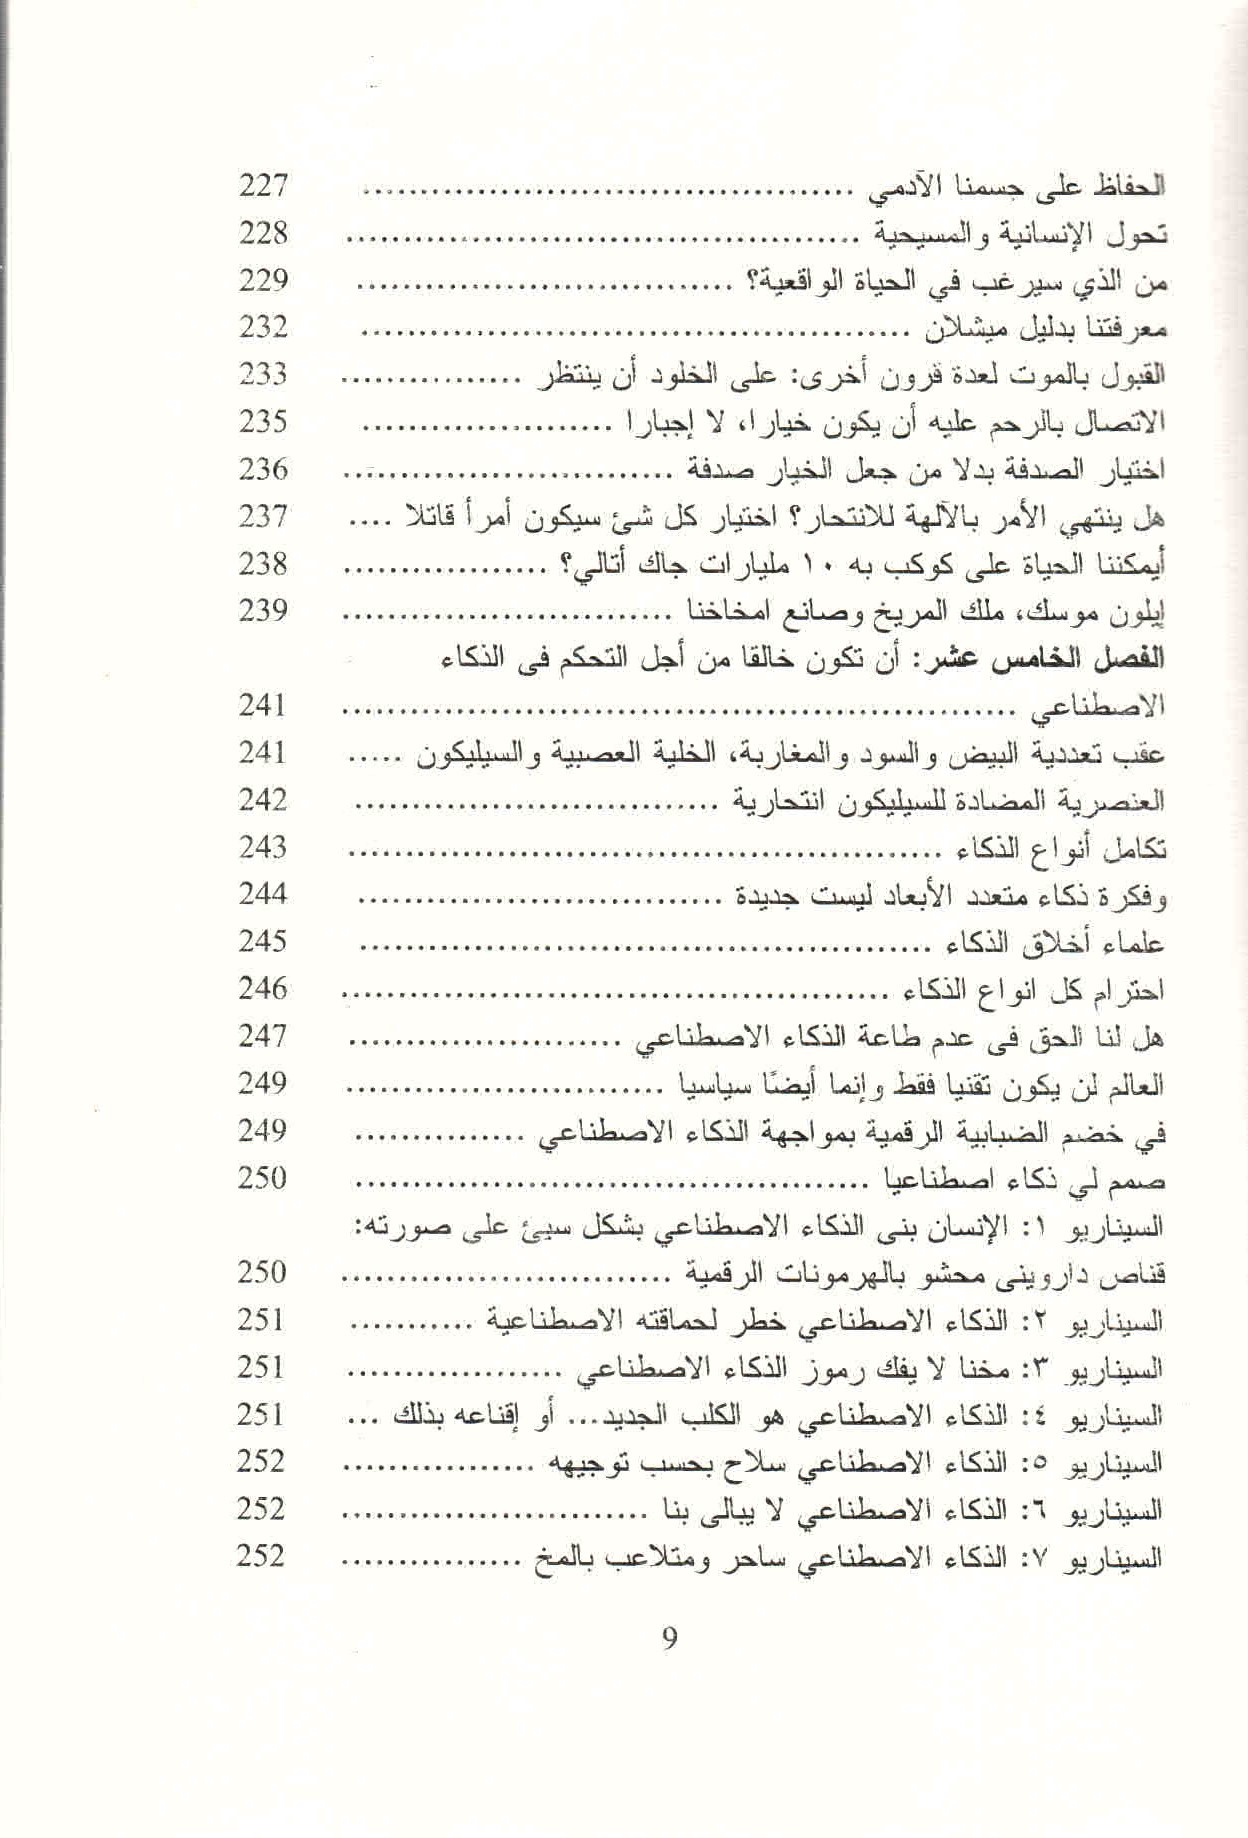 ص. 9 قائمة محتويات كتاب حرب الذكاء.